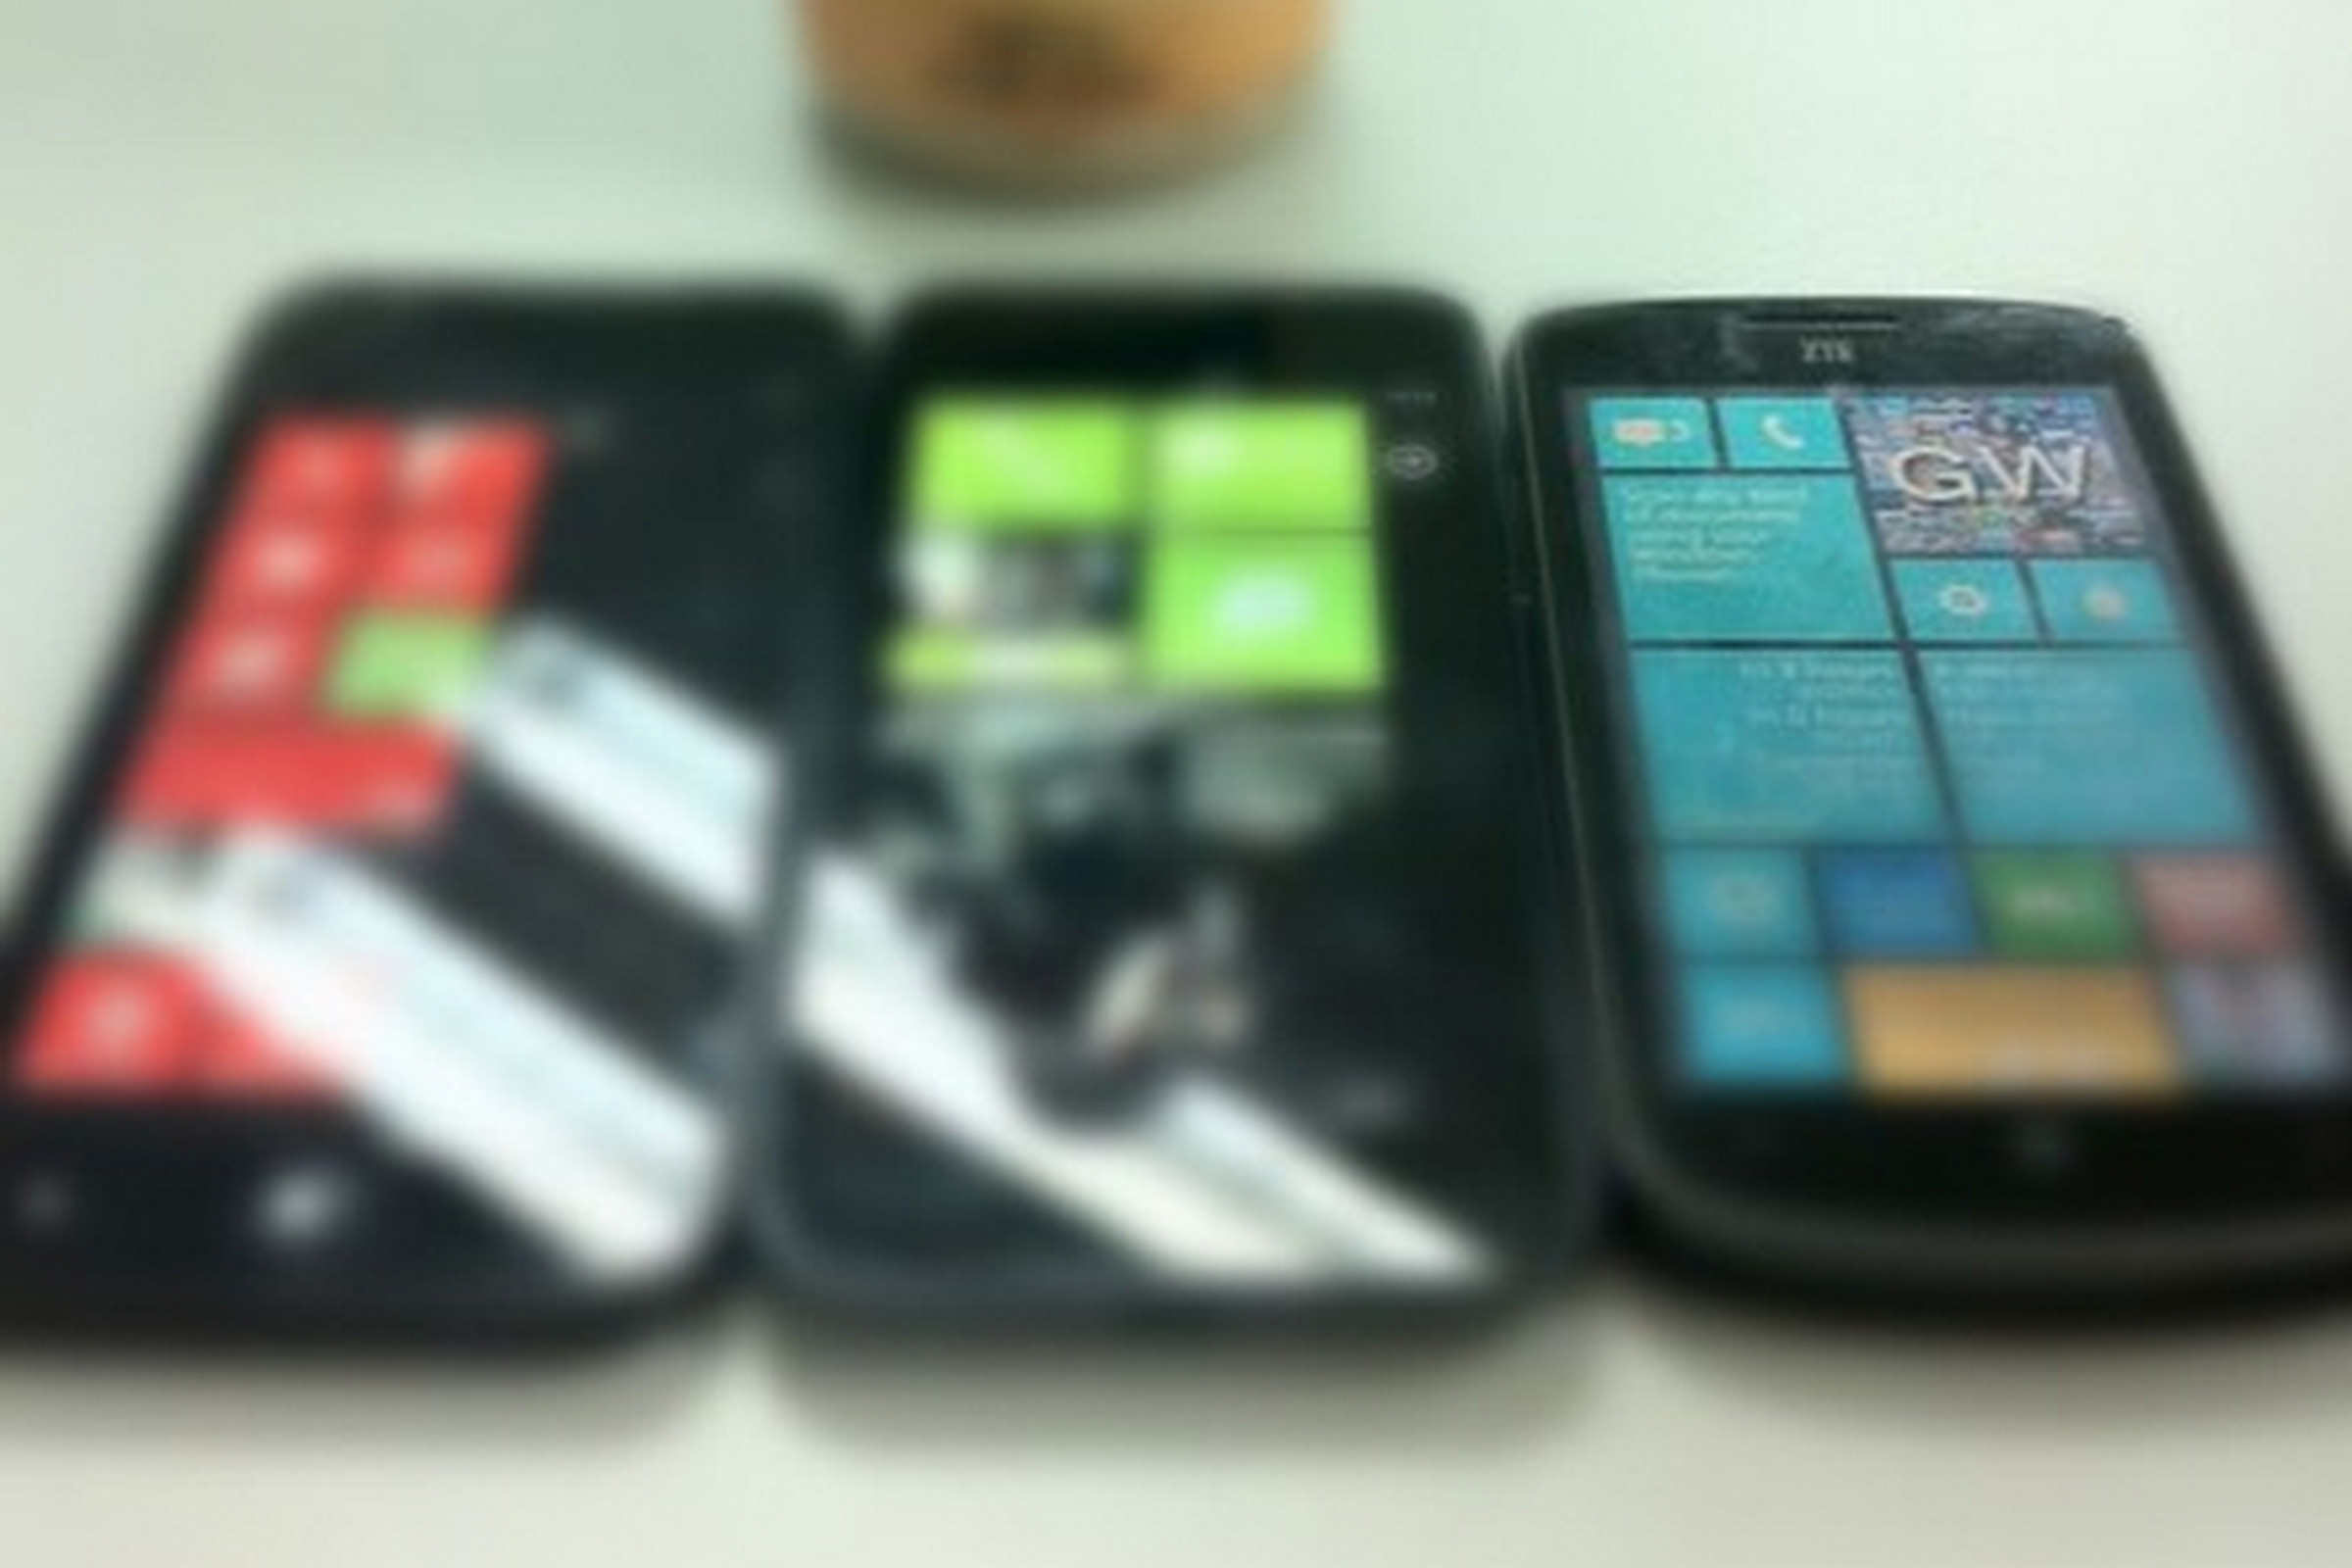 ZTE Windows Phone 8 handsets (Dennis Lui/Sina Weibo)